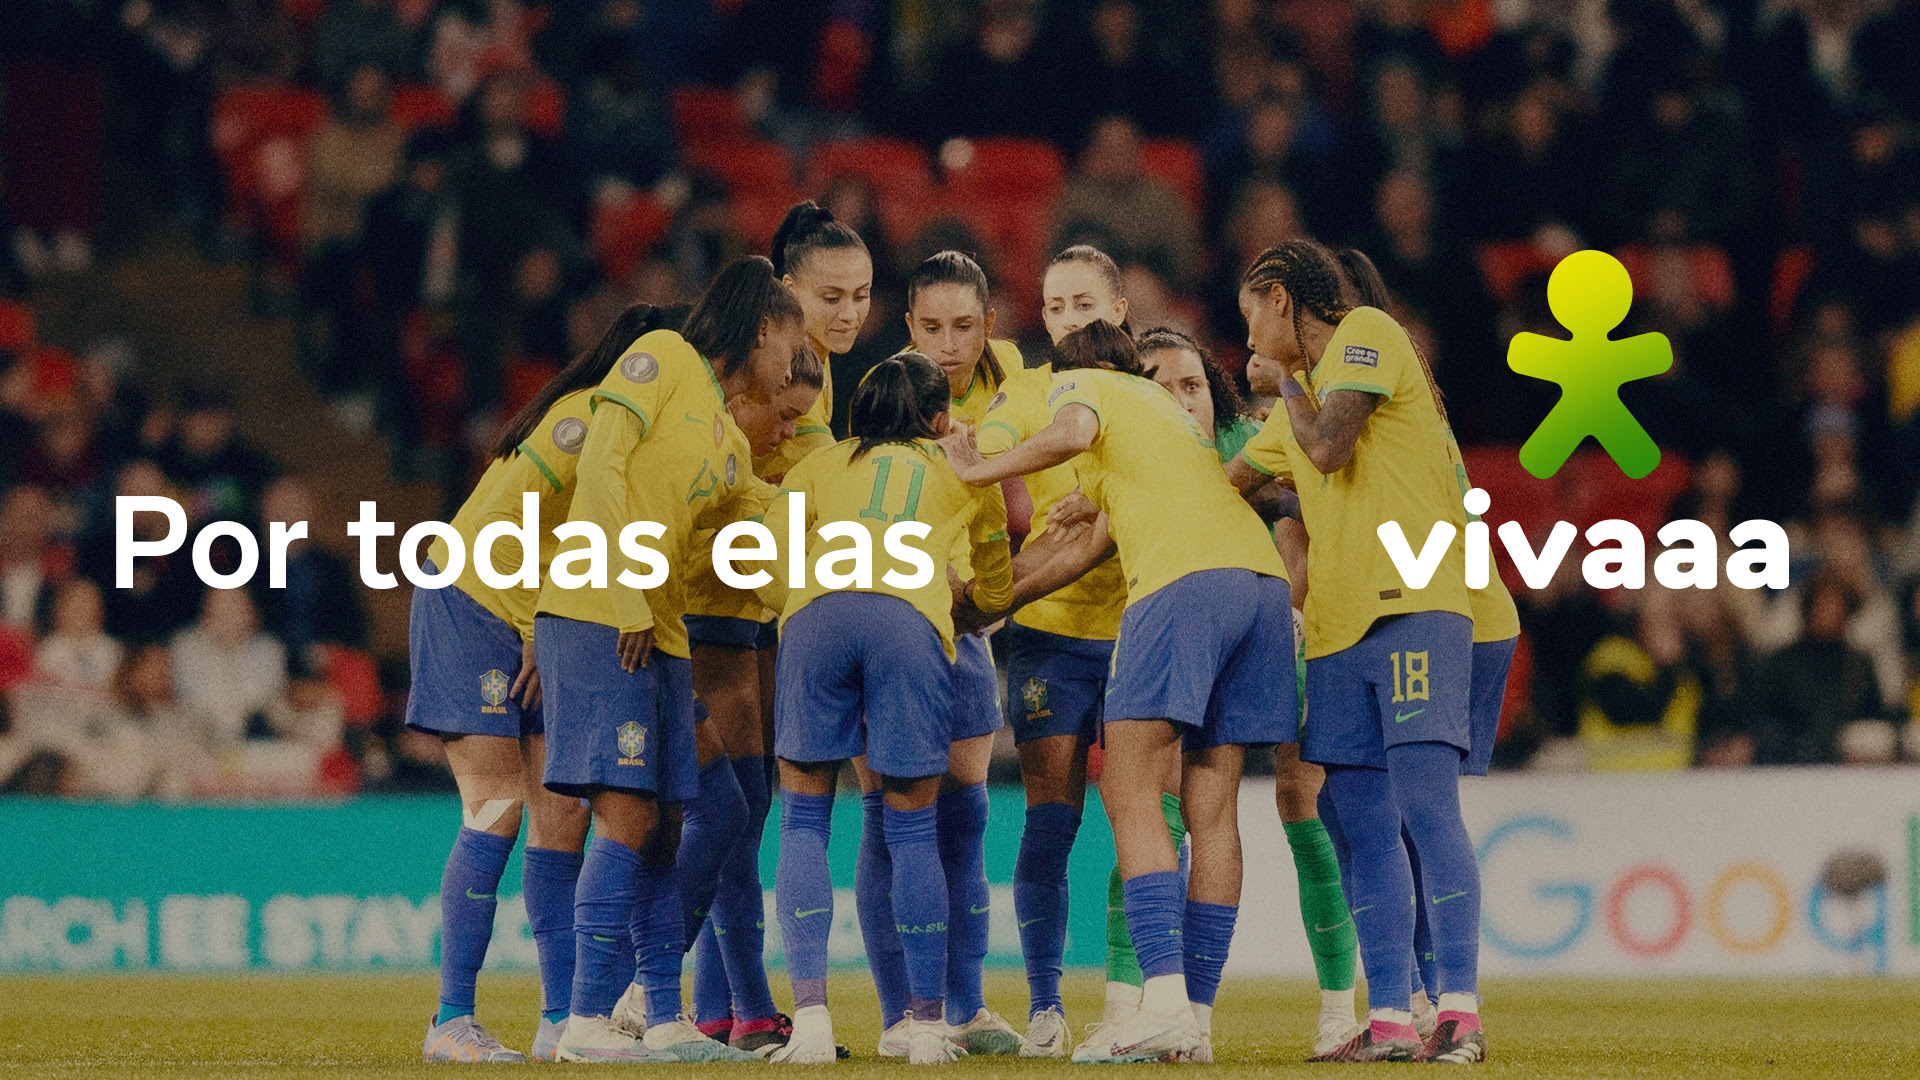 Vivo muda marca para Vivaaa em comemoração pela vitória da Seleção Feminina de Futebol